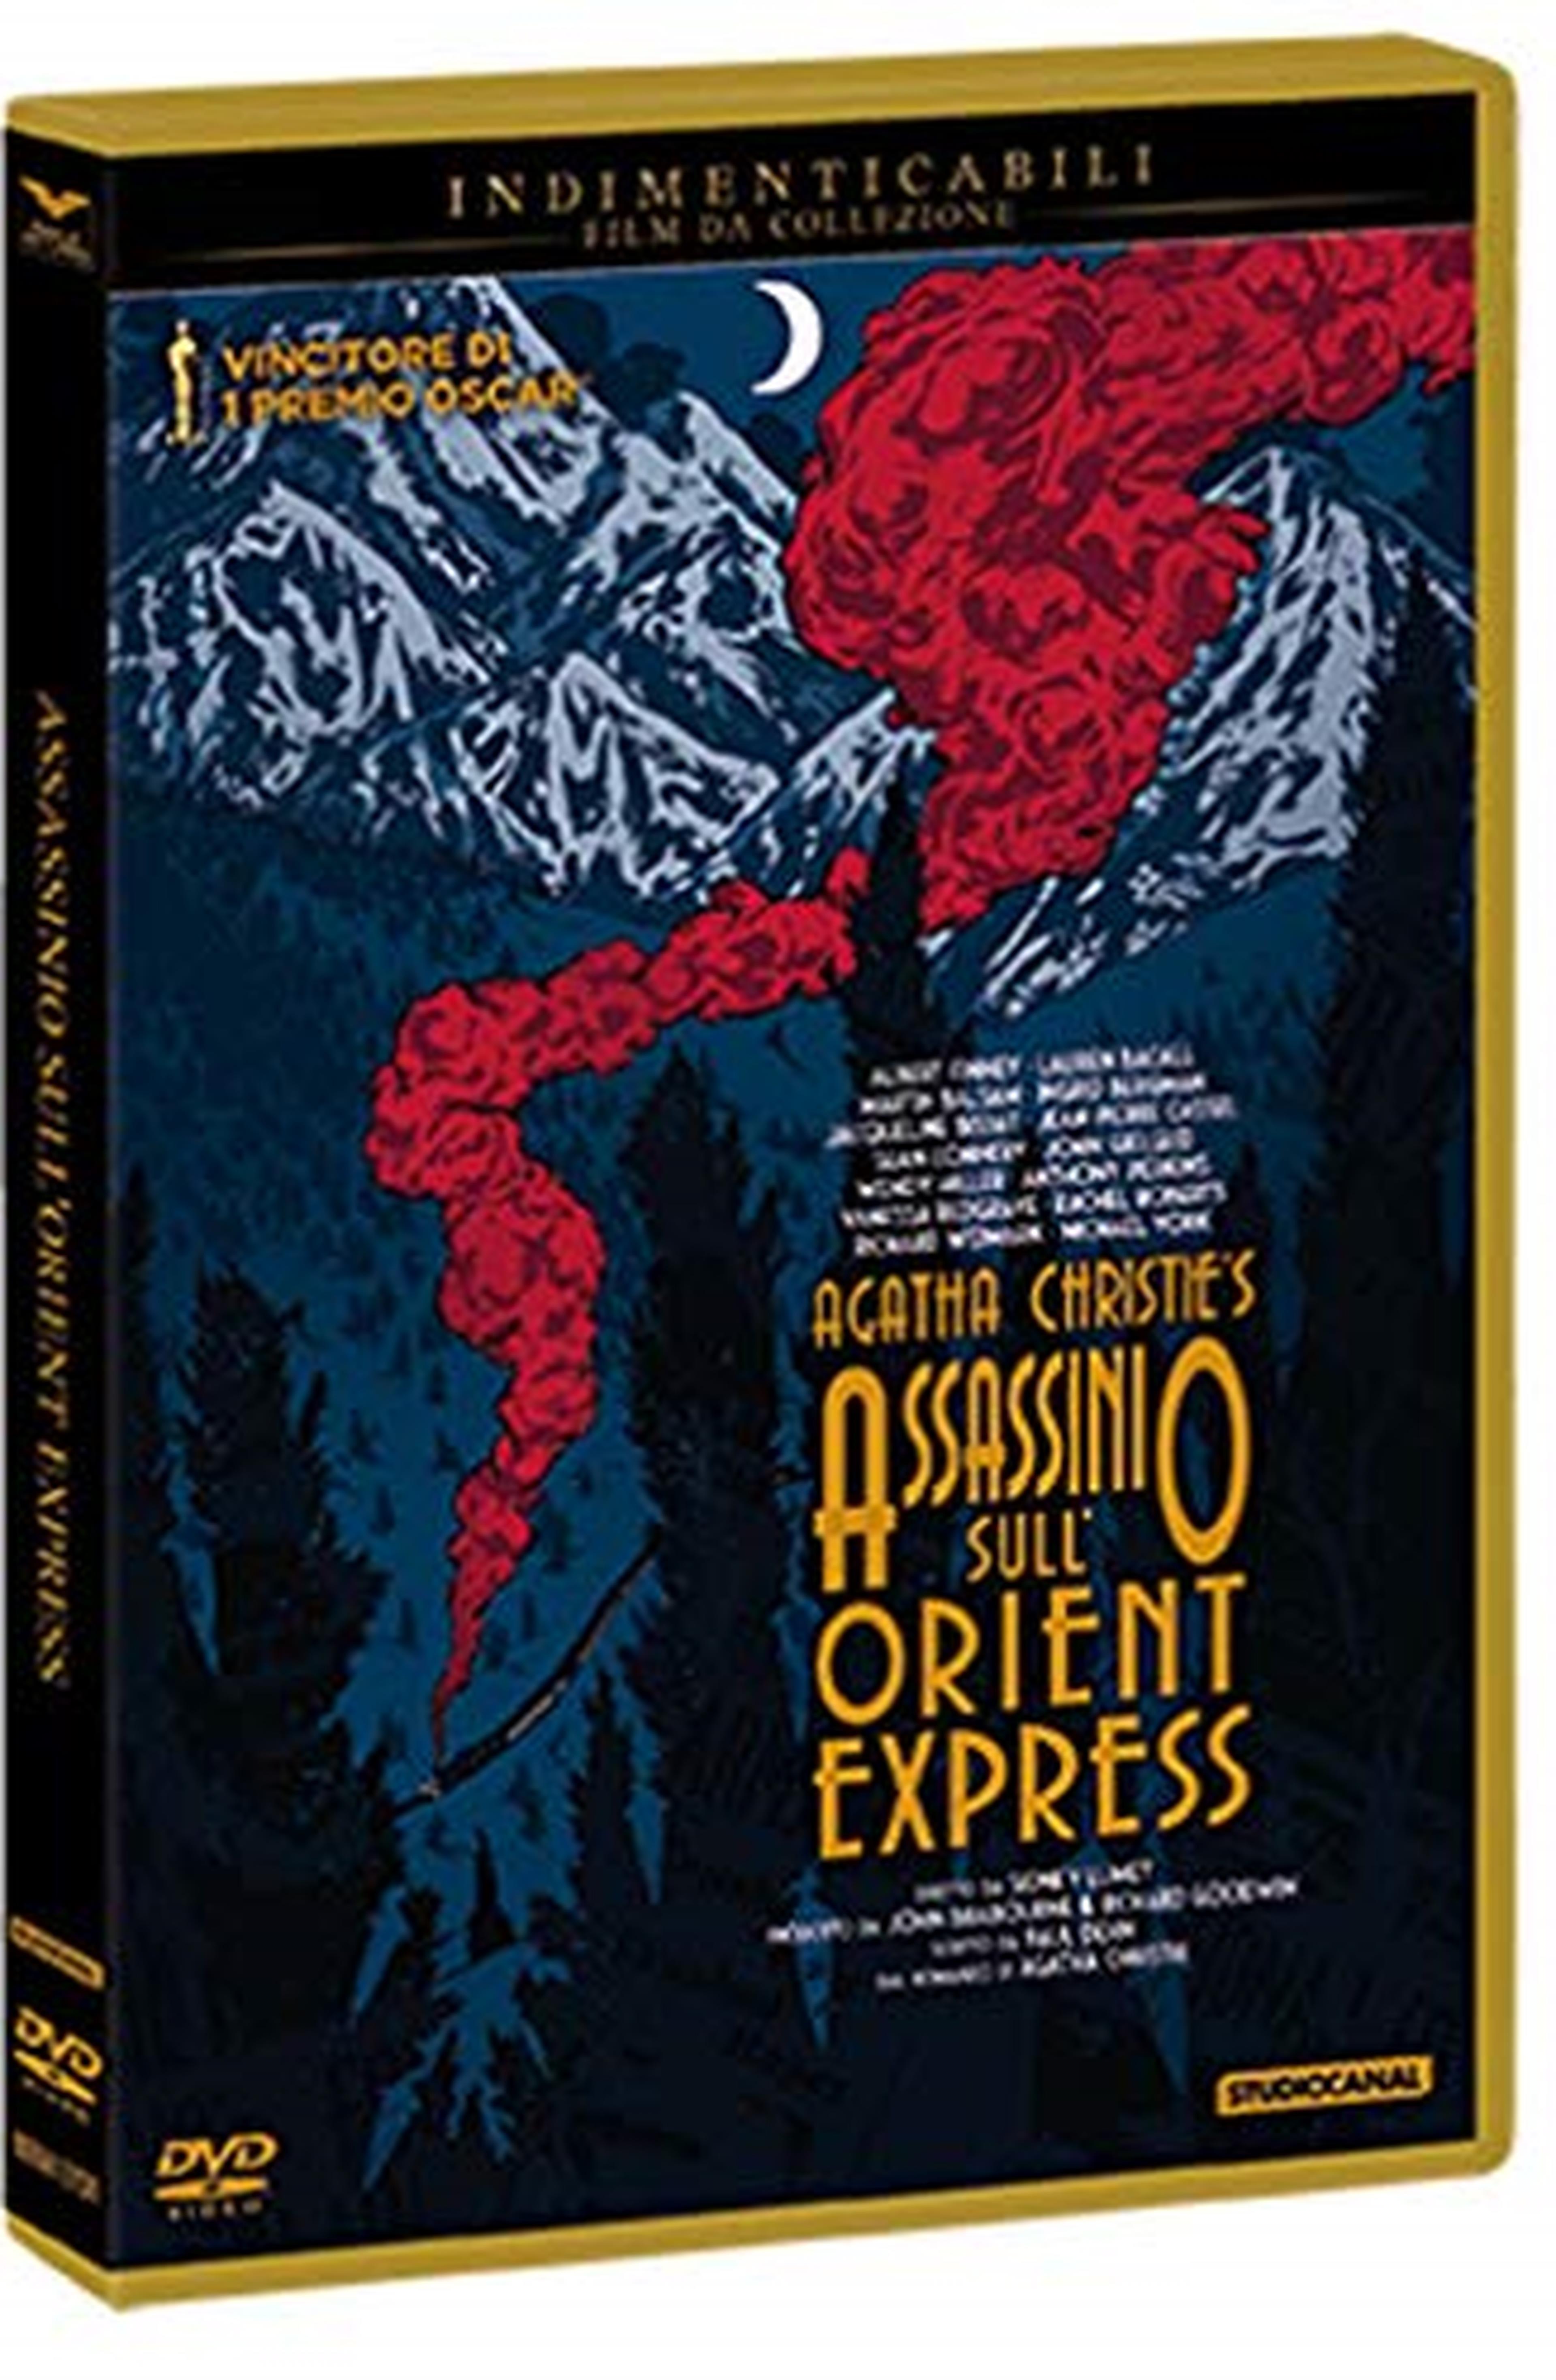 Assassinio Sull'Orient Express "Indimenticabili" New Artwork Oro